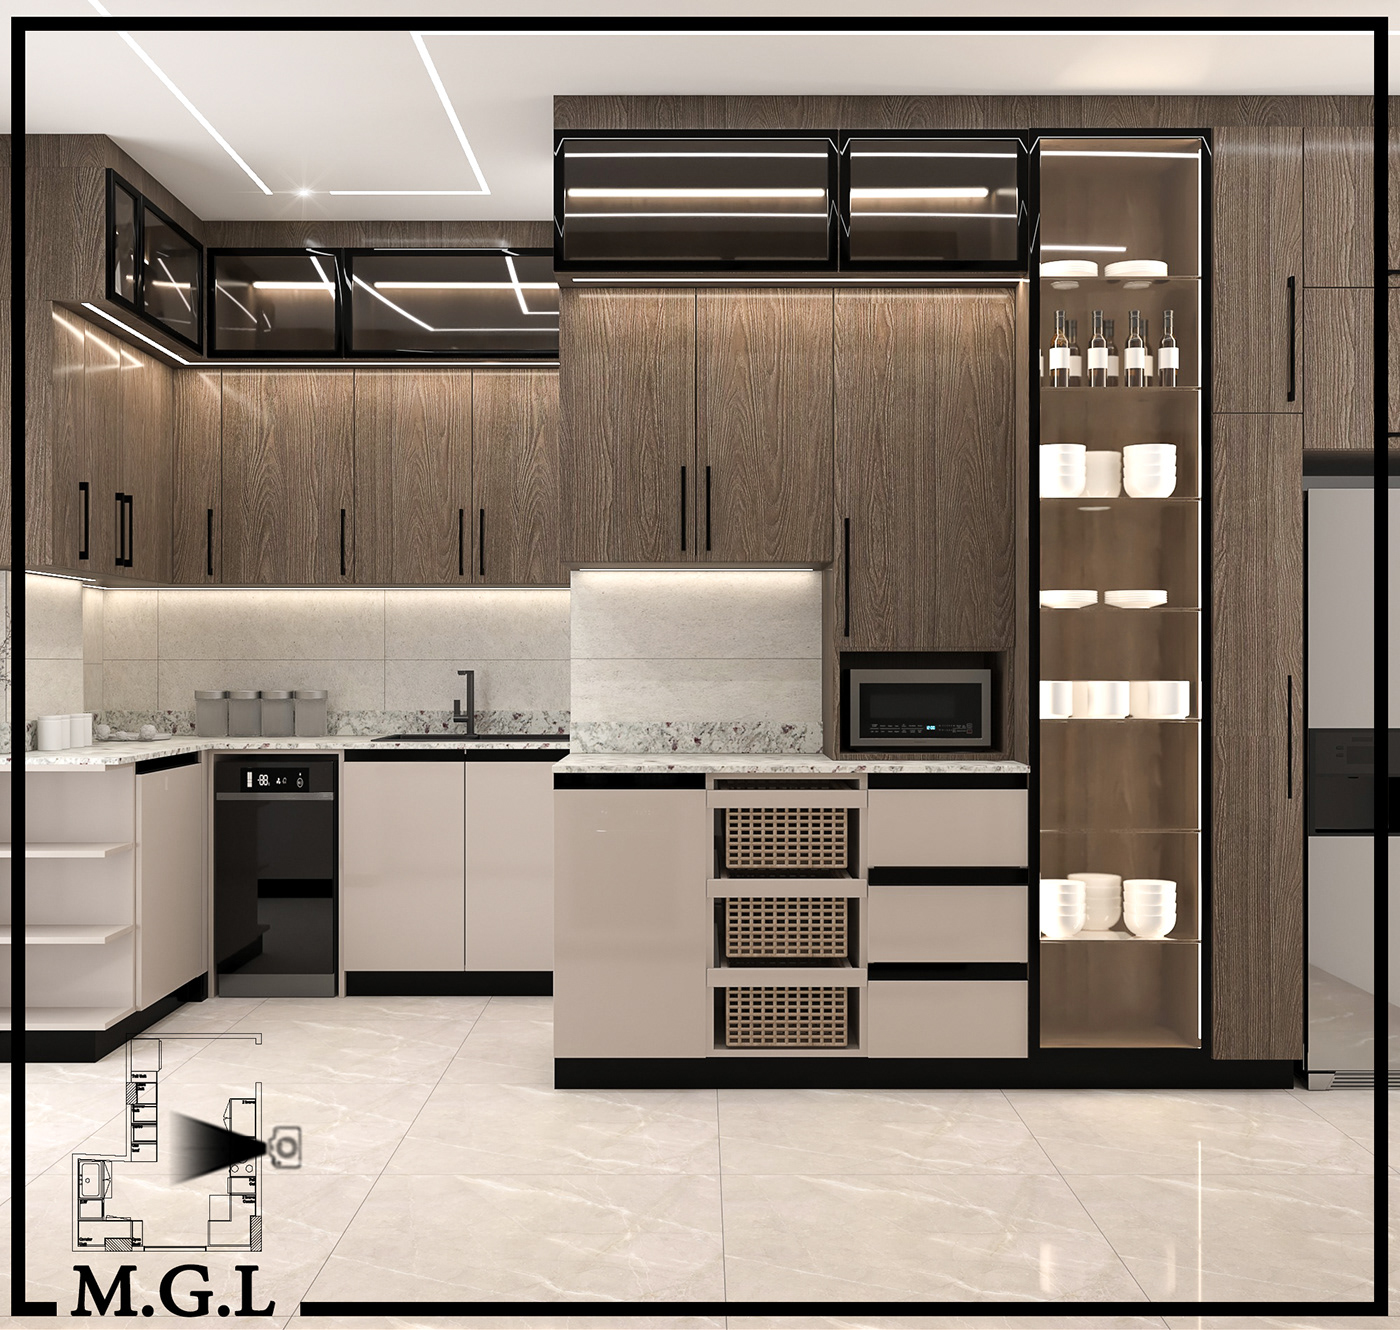 kitchen kitchendesign homedecoration   3dsmax vray visualization modern interior design  Render intetior design 